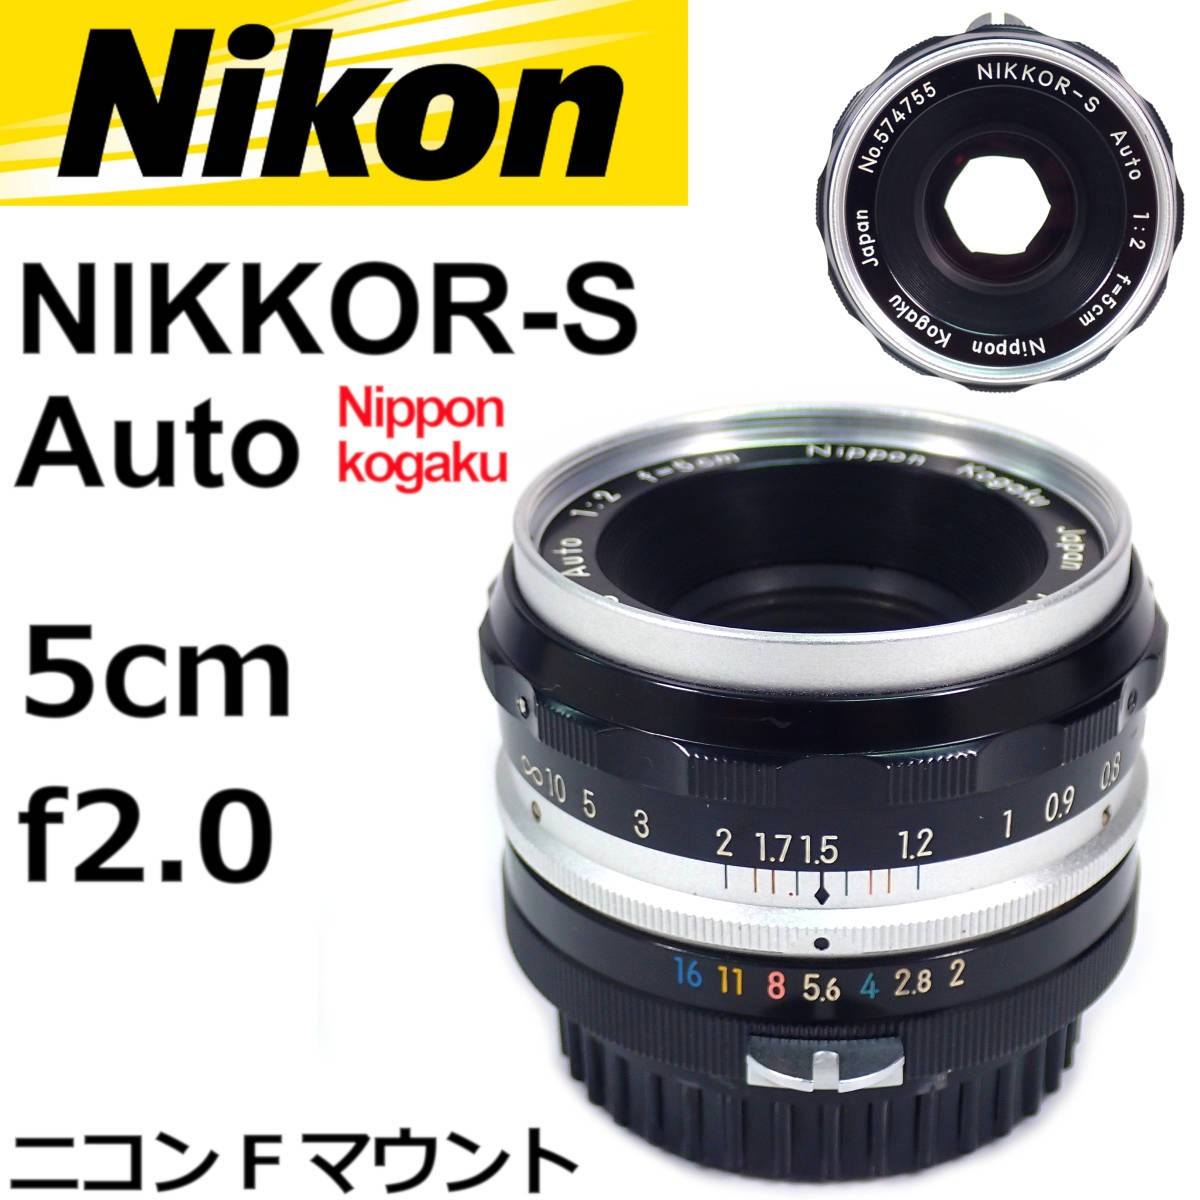 ニコン NIKKOR-S Auto 5cm f2 Nippon Kogaku Nikon 動作確認済